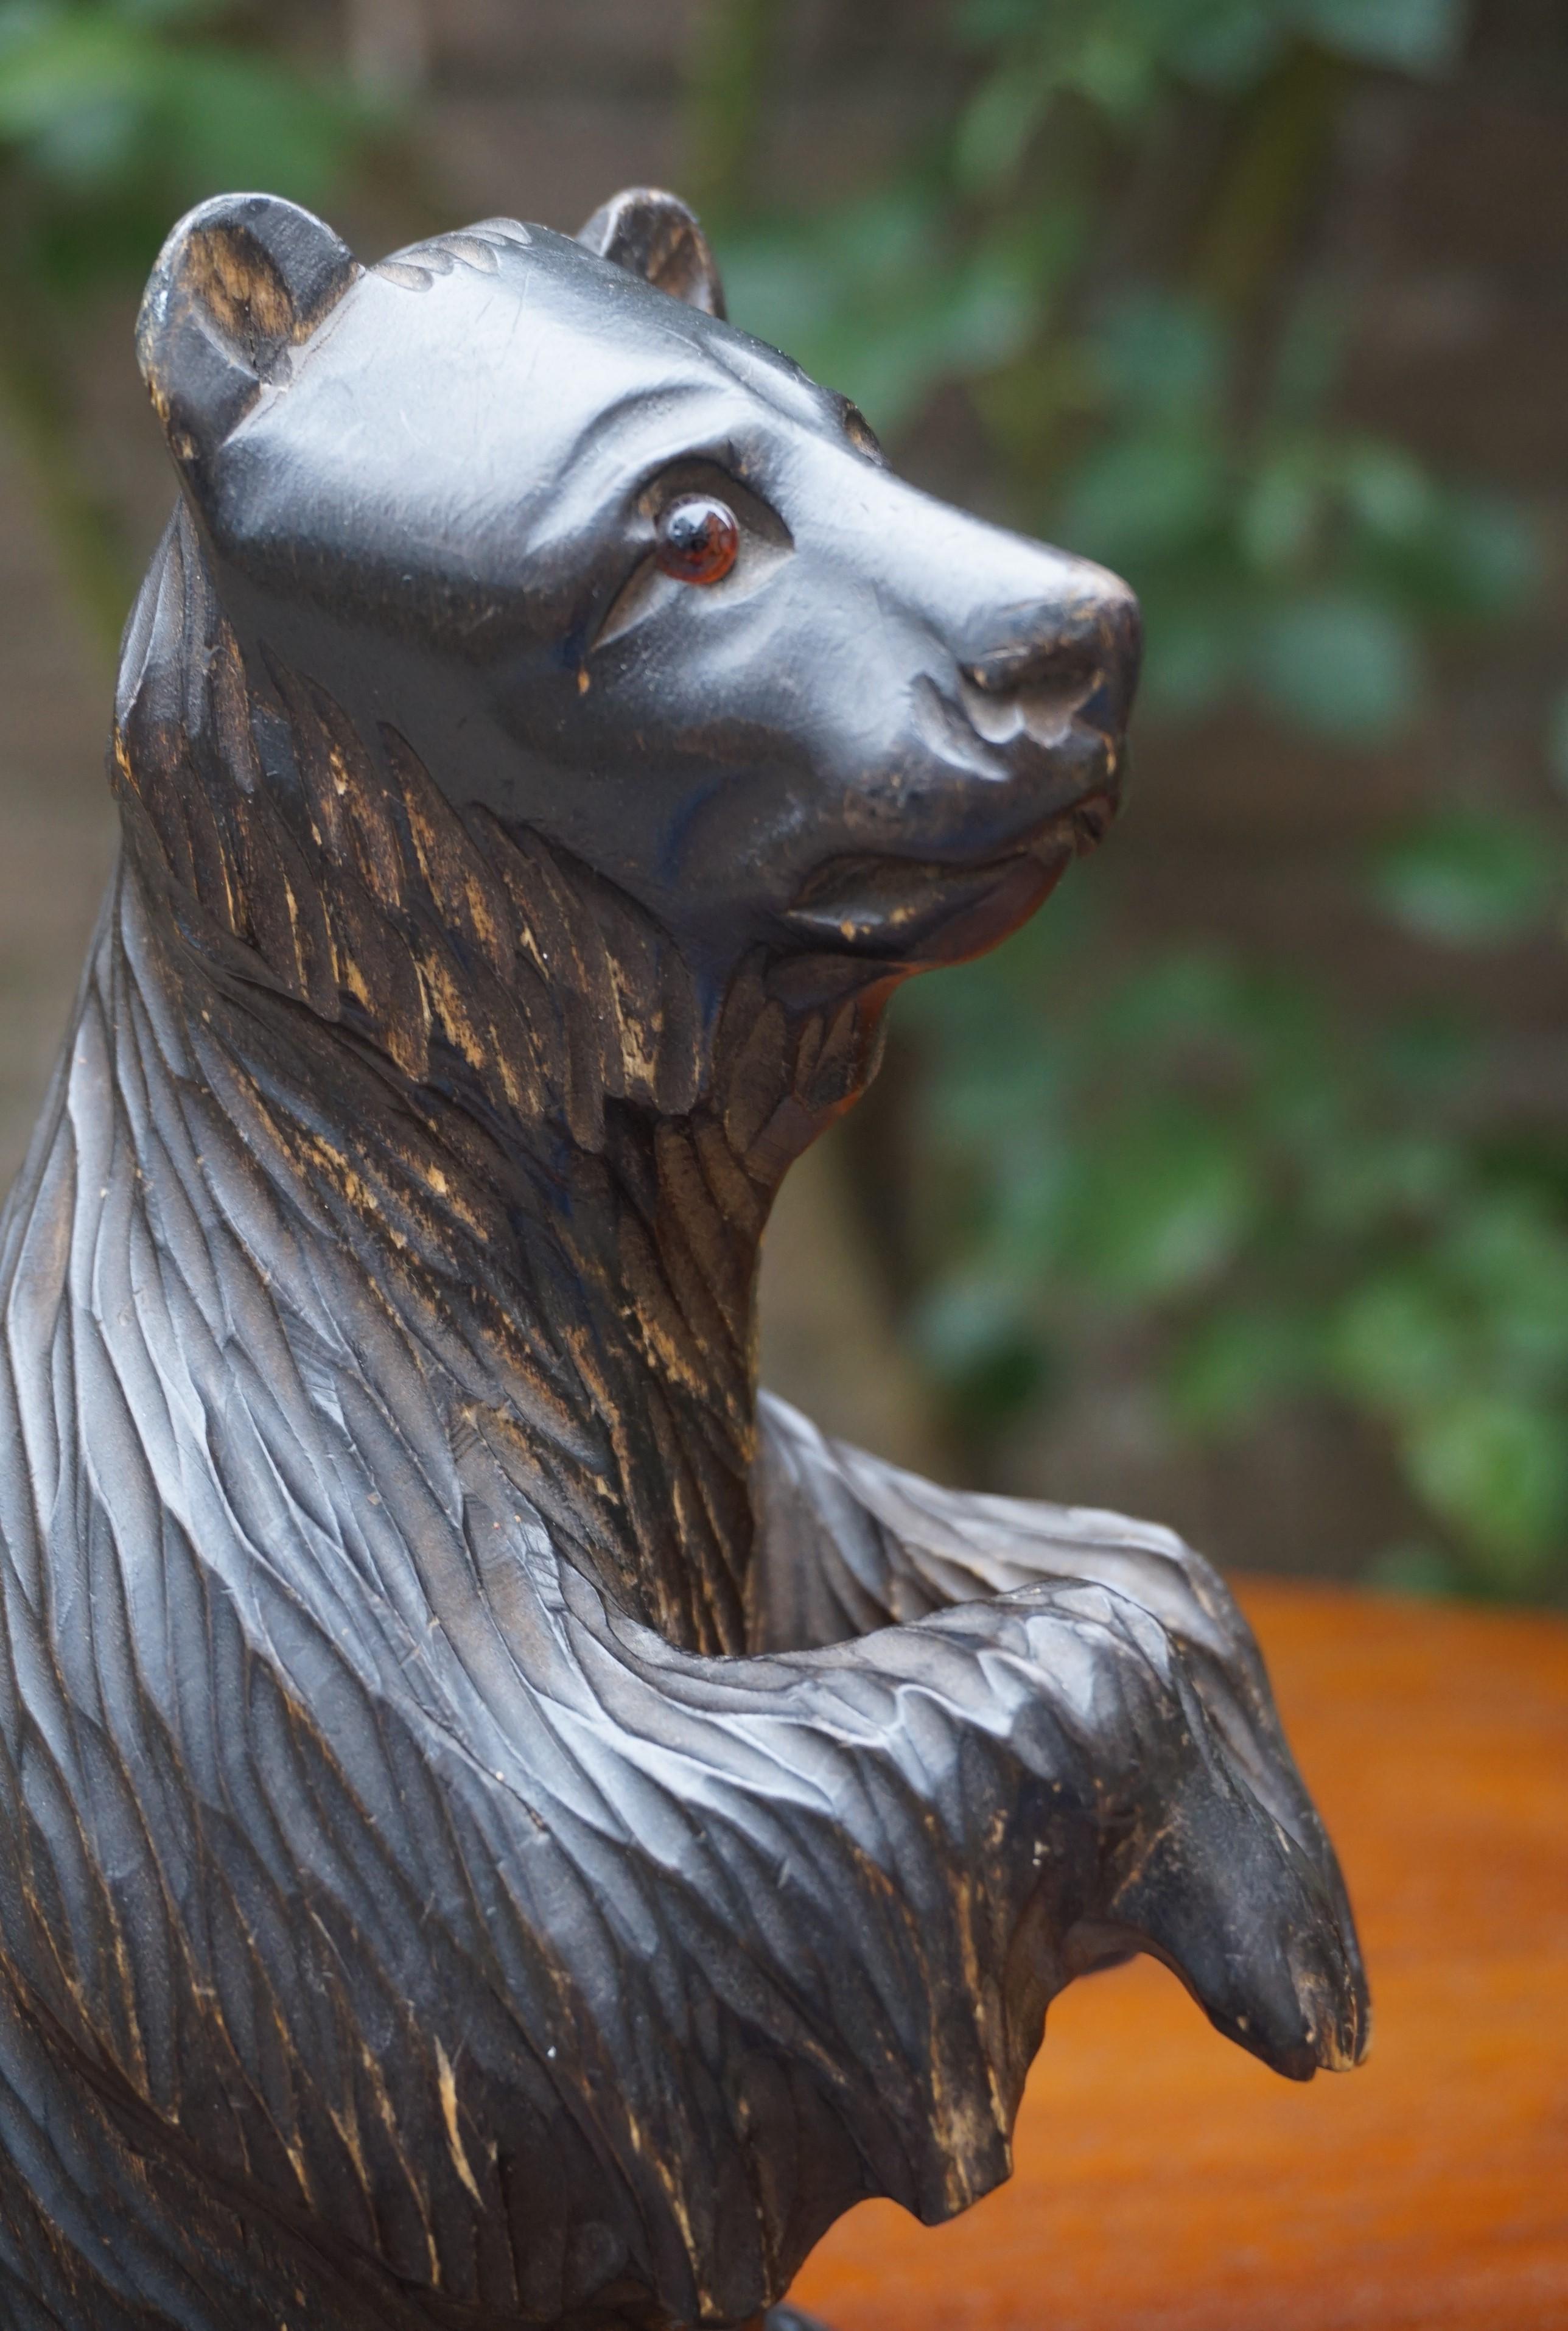 Sculpture d'ours assis, unique en son genre, avec des yeux en verre coloré et beaucoup de caractère.

Cette sculpture d'ours assis datant du début ou du milieu du XXe siècle et provenant de Russie (voir images 13 et 14) présente la plus belle